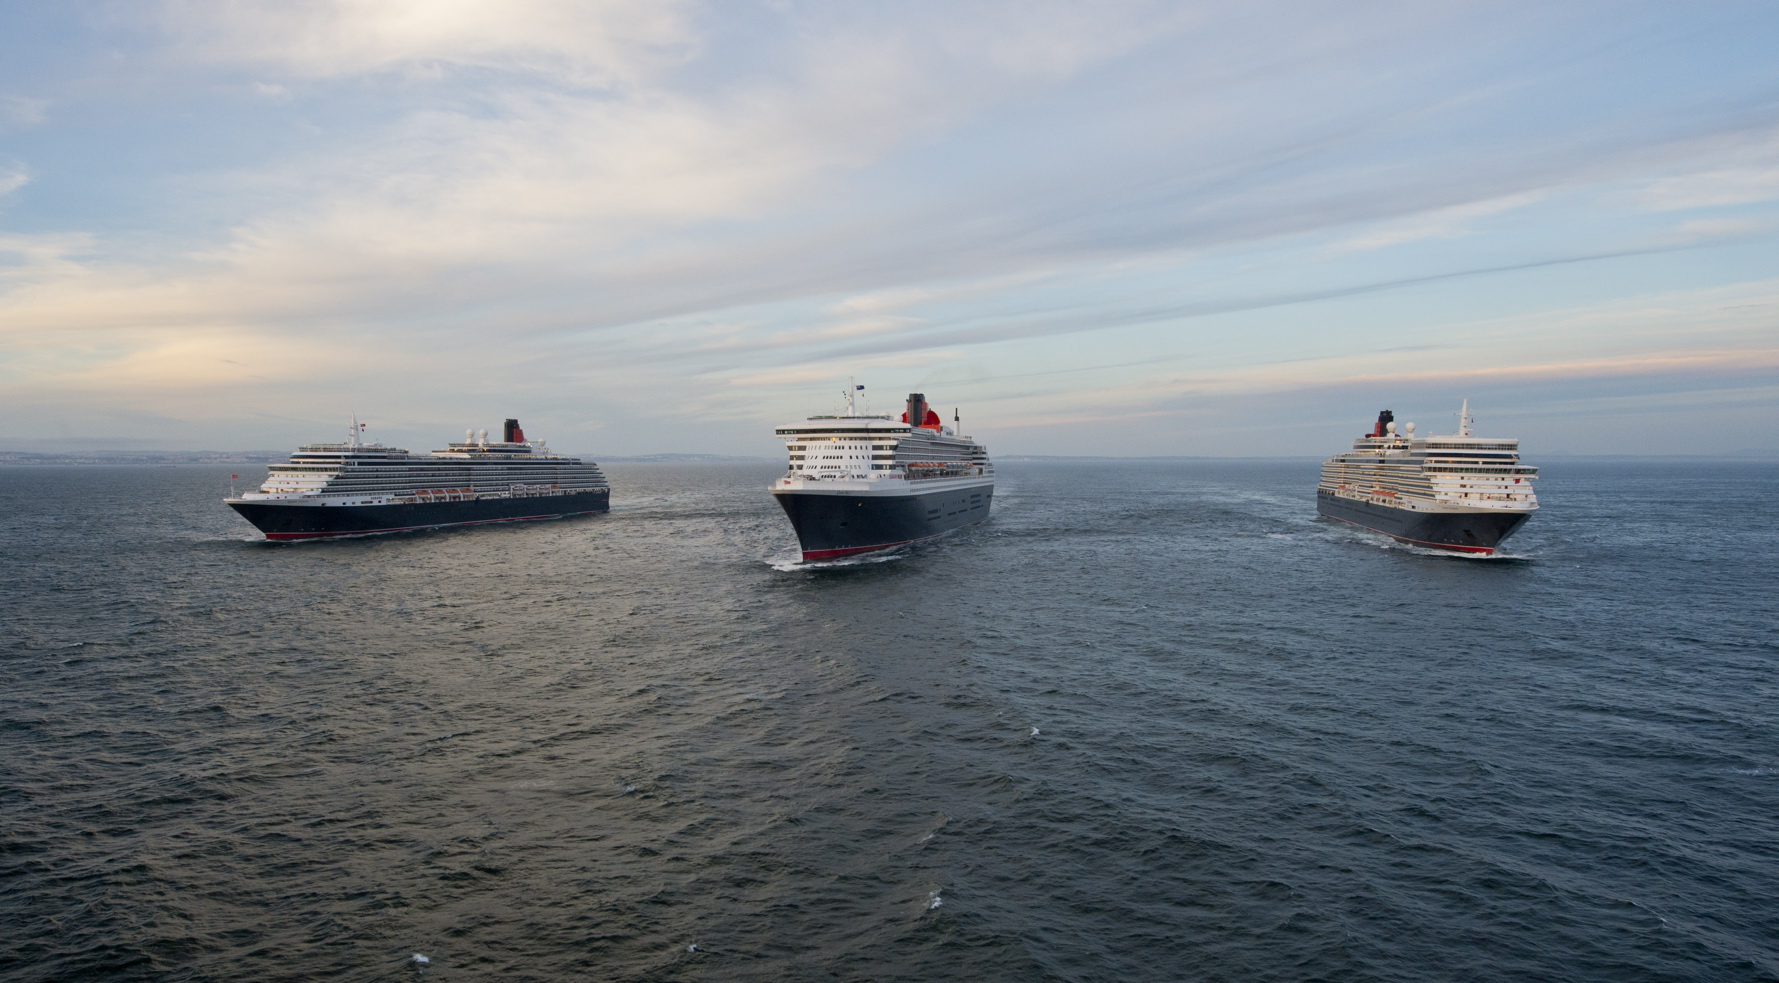 Im frisch erschienenen Cunard-Katalog 2020/2021 finden sich neue, spannende Häfen: Hualien auf Taiwan, das zu Okinawa gehörende Miyako-jima und das neuseeländische New Plymouth